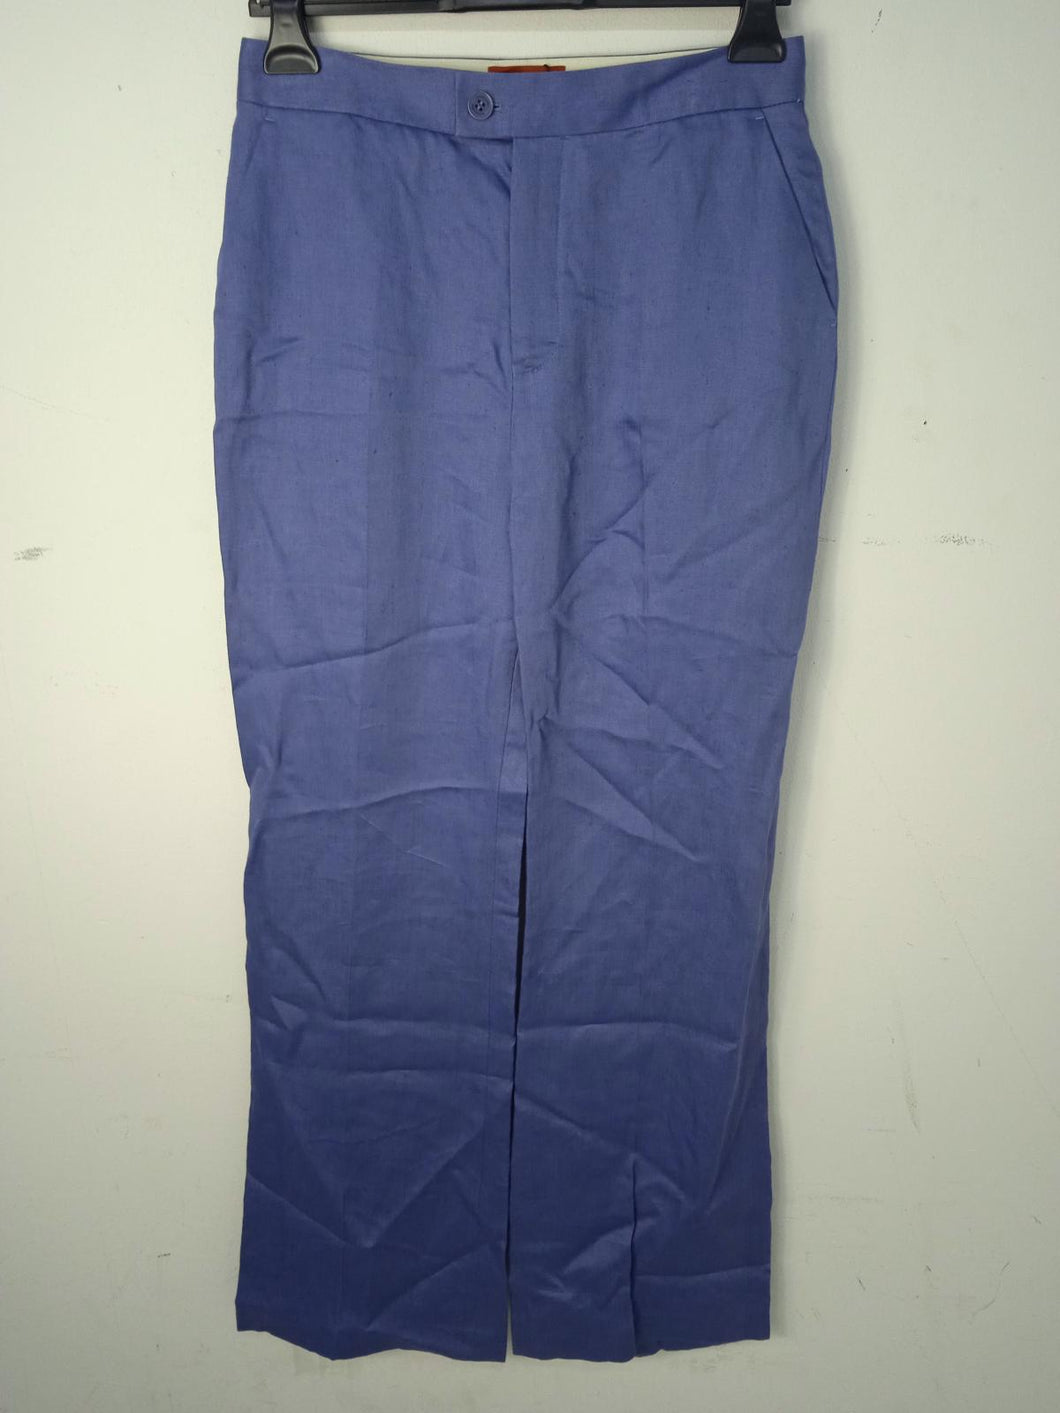 ALTUZARRA Ladies Alaskan Blue Cotton Wide Leg Trousers EU40 UK12 BNWT RRP540